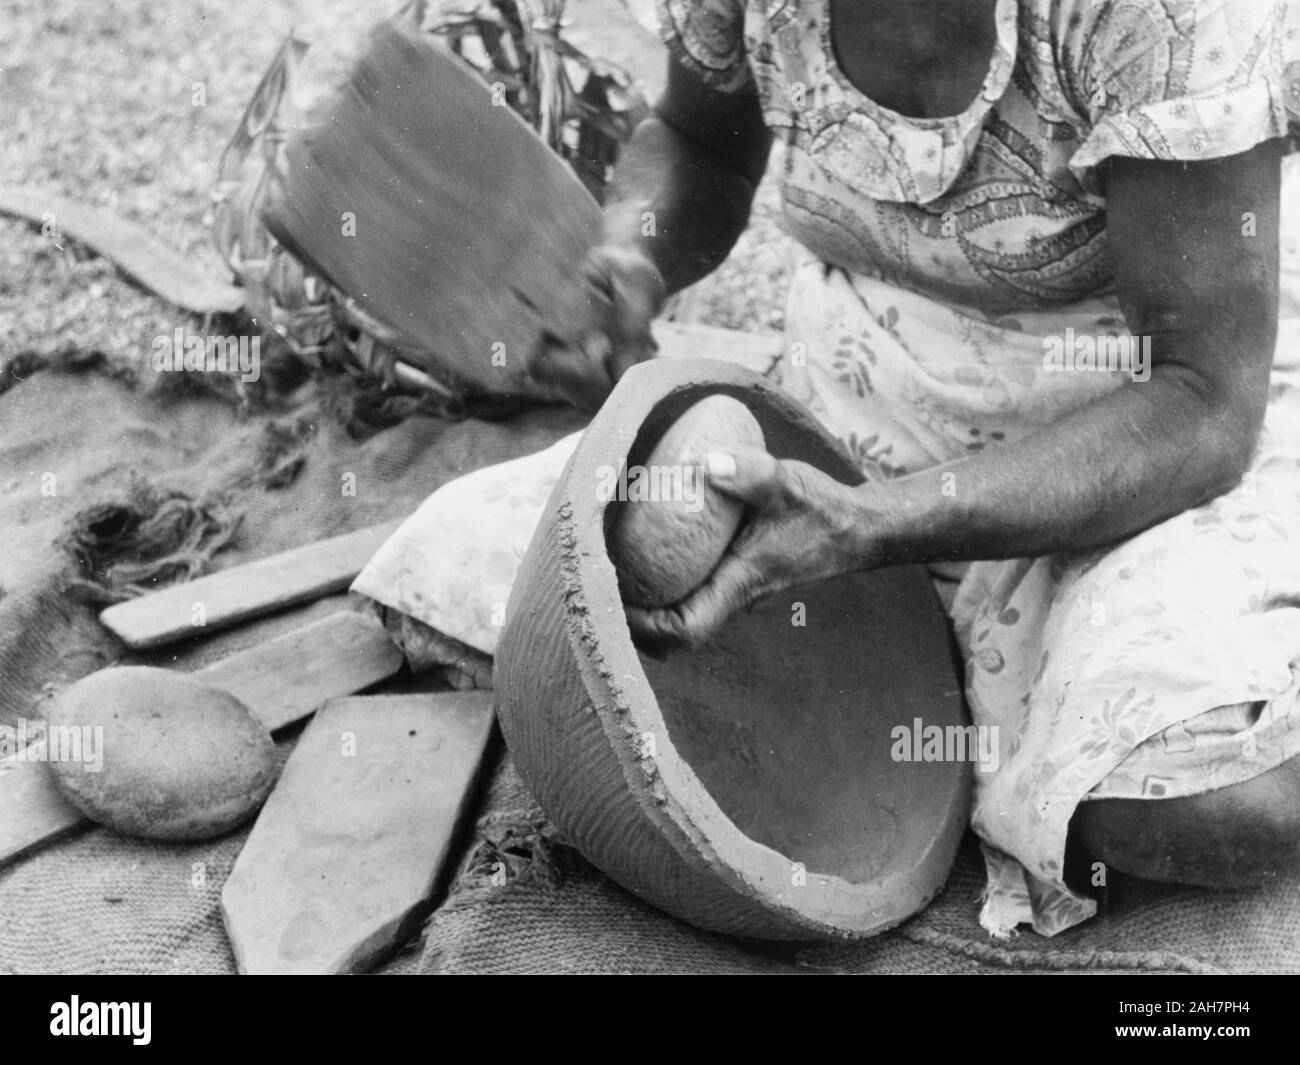 Fidji, faire un pot en argile, FijiA femme agenouillée façonne un pot en argile à l'aide d'une pierre arrondie et une palette de bois. Sous-titre suivant : poteries faites à la main, 1965. 2005/010/1/14/92. Banque D'Images